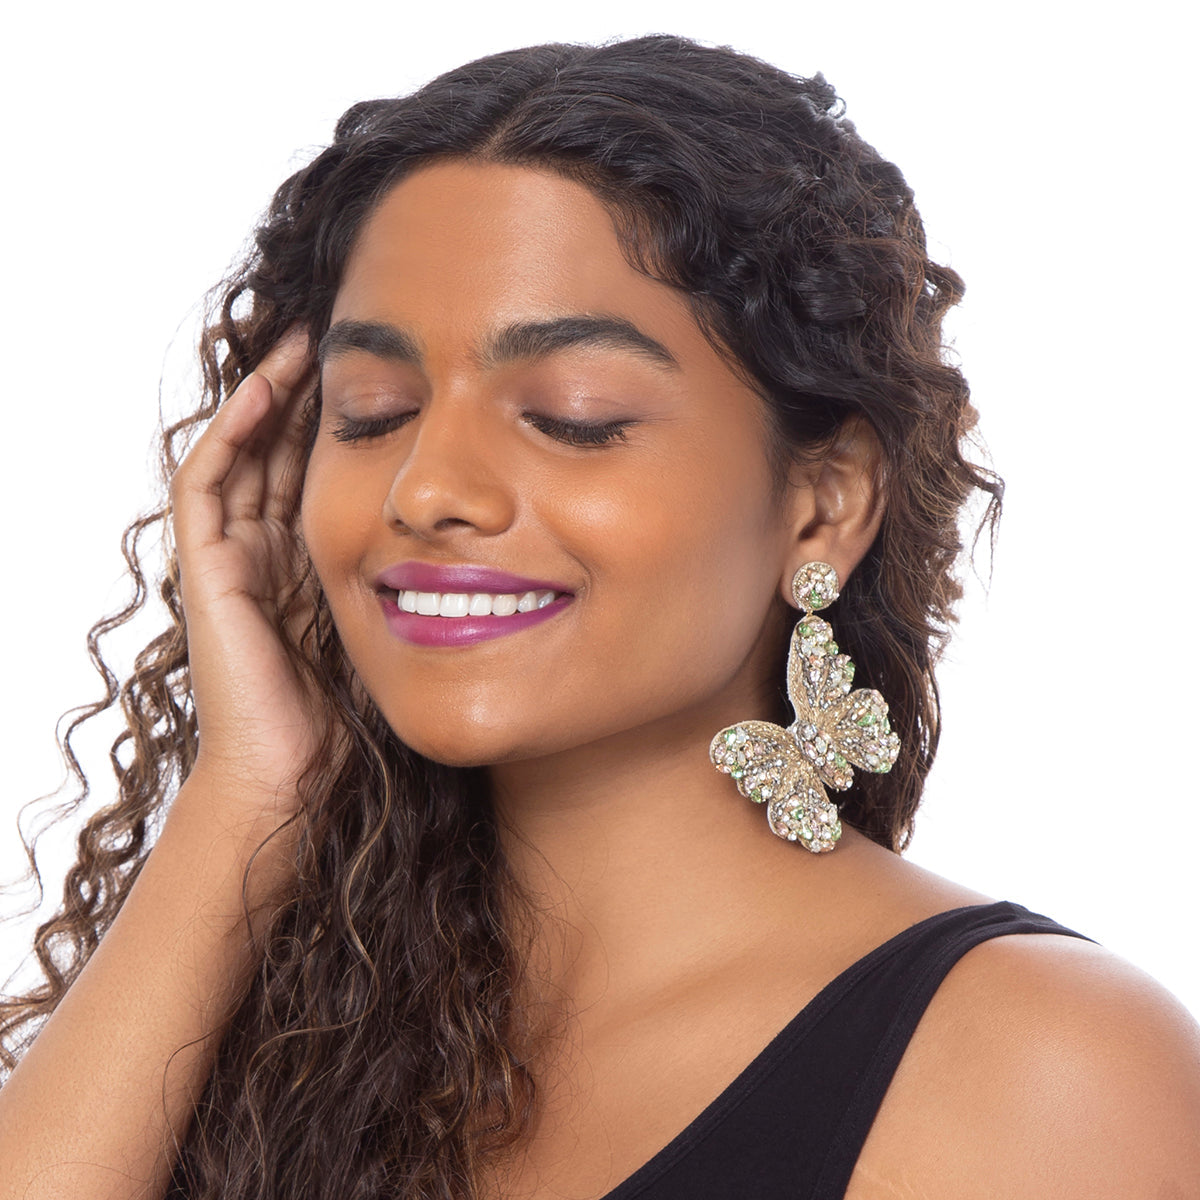 Detailed crystal butterfly earrings by Deepa Gurnani